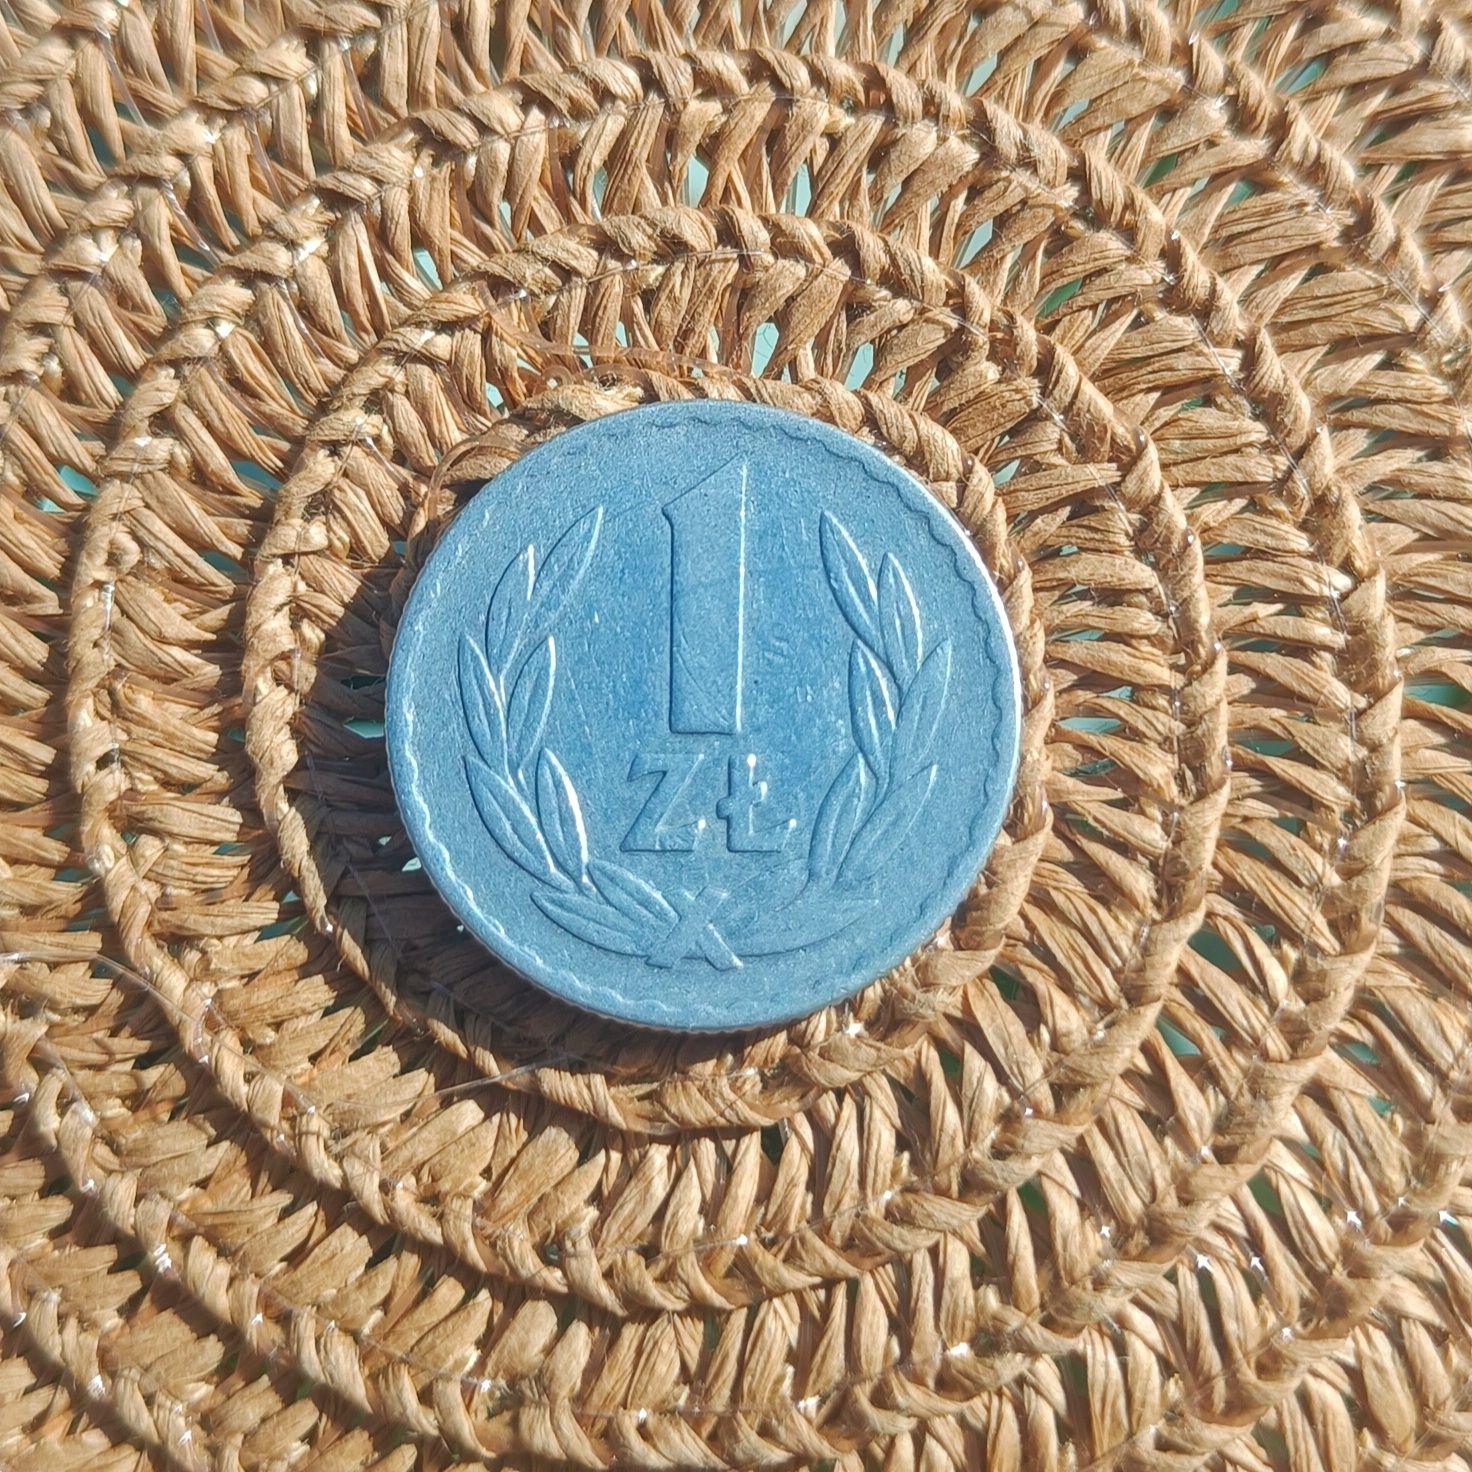 Moneta 1 zł z 1967 roku, ceniony unikat!